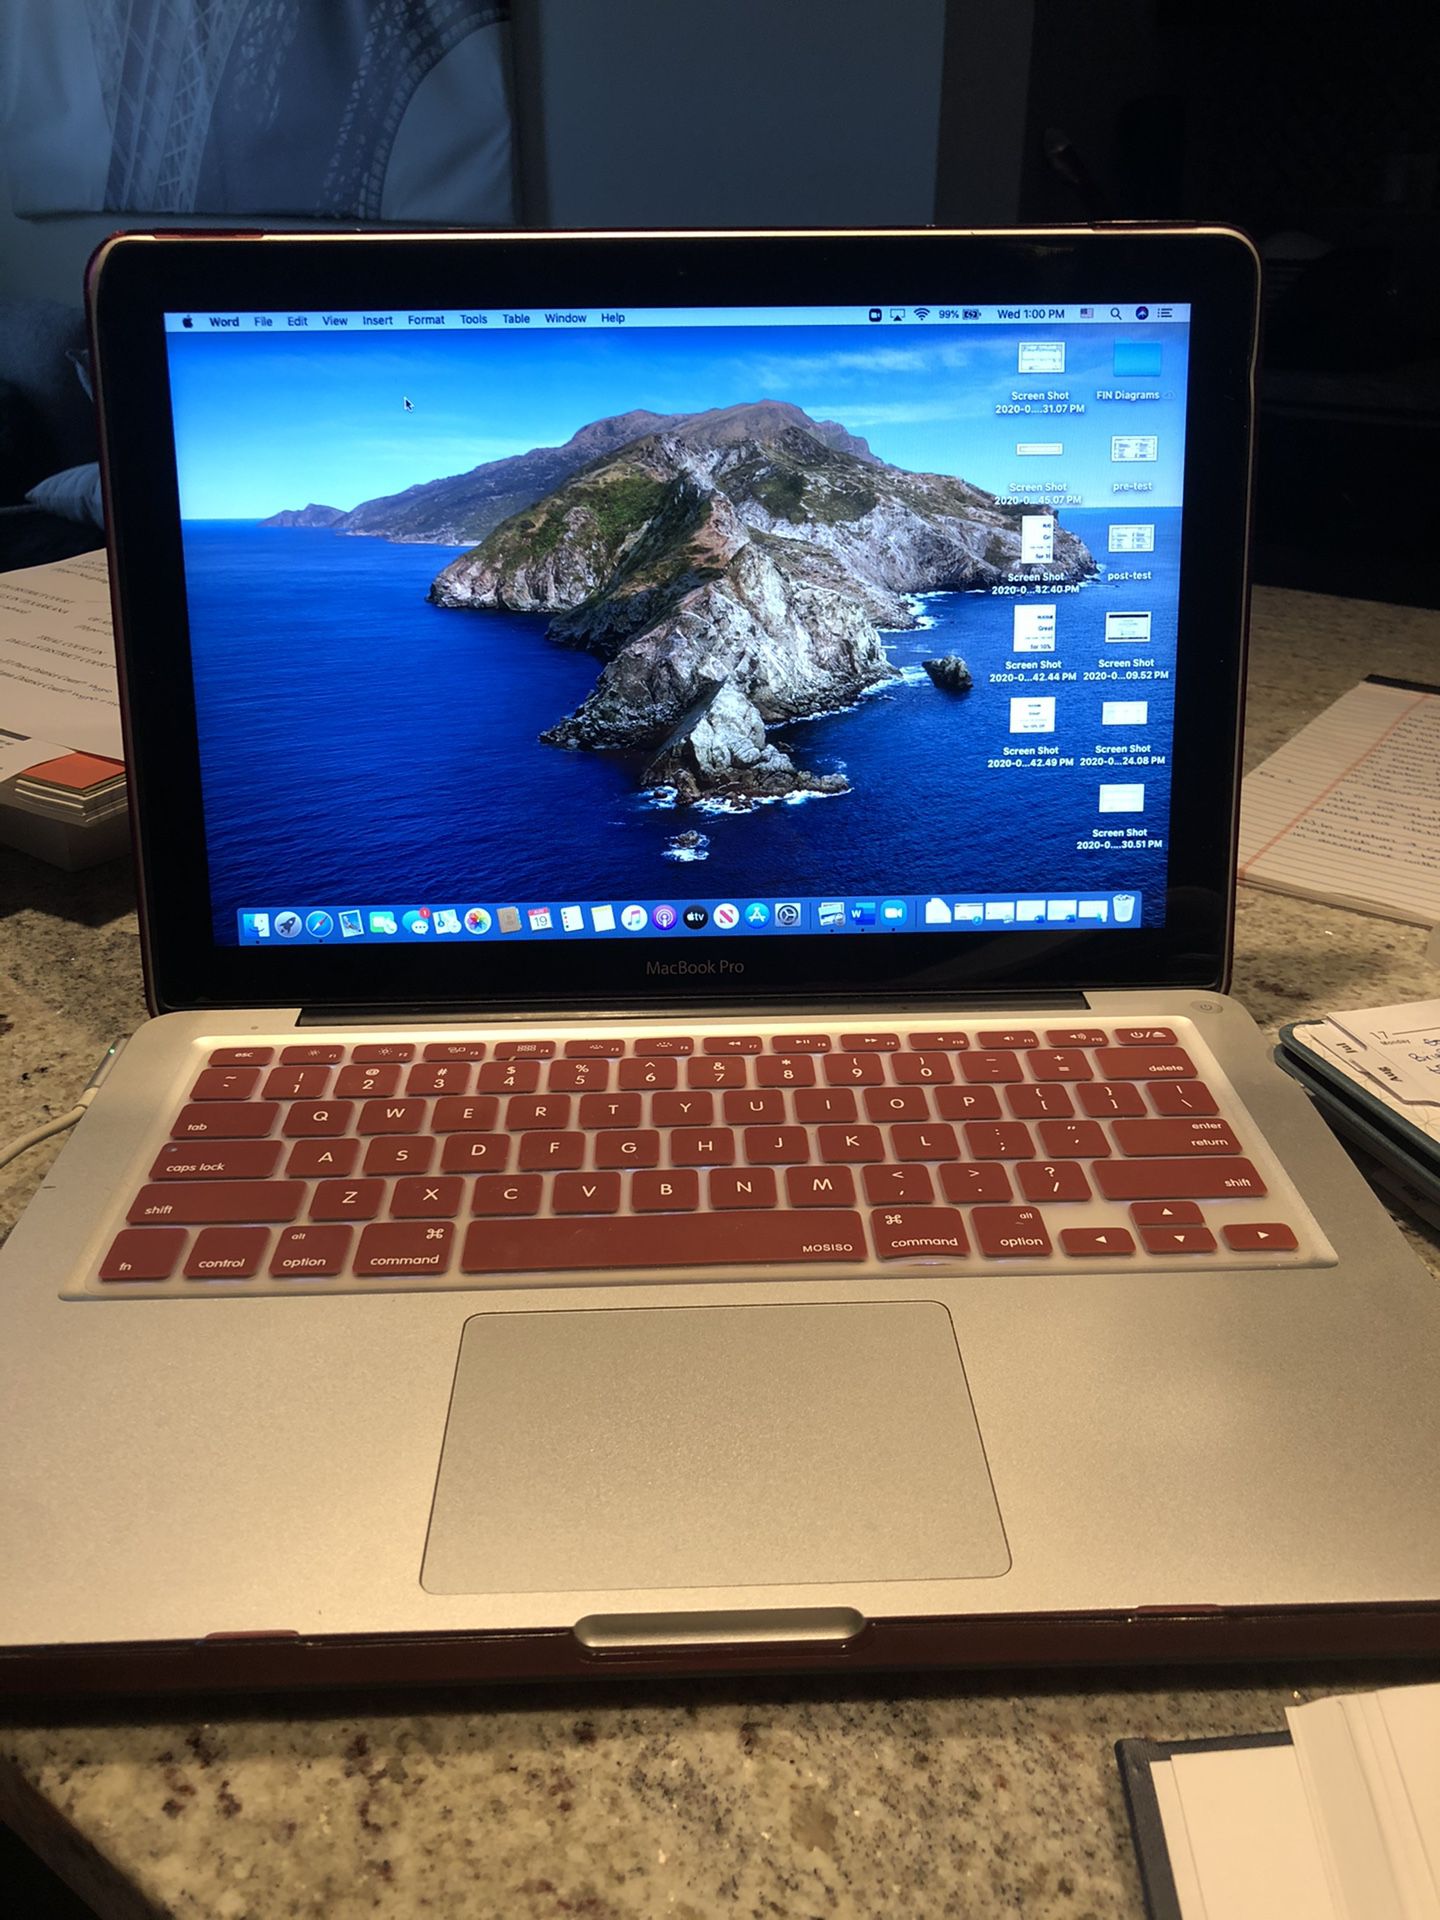 2012 MacBook Pro 13 inch, i7 core